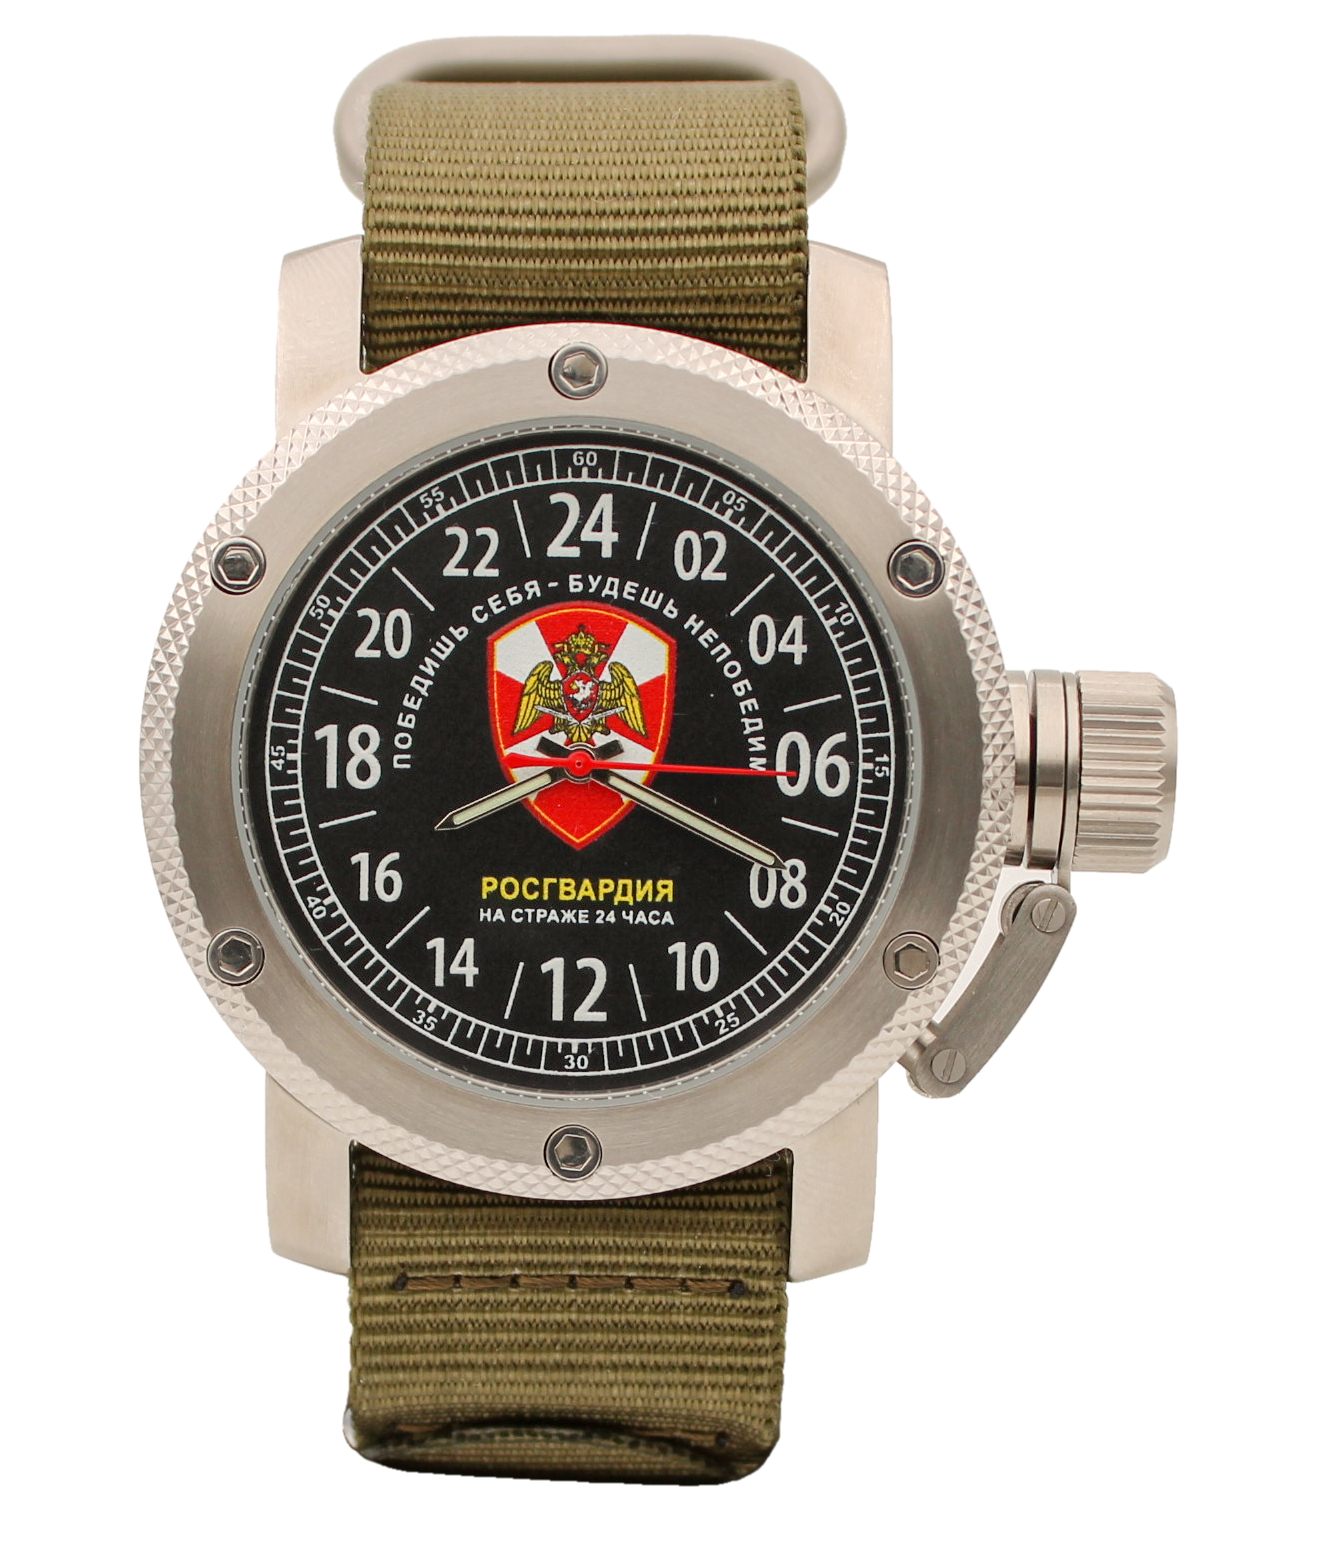 фото Наручные часы мужские watch triumph 04.11.164.11.21 хаки